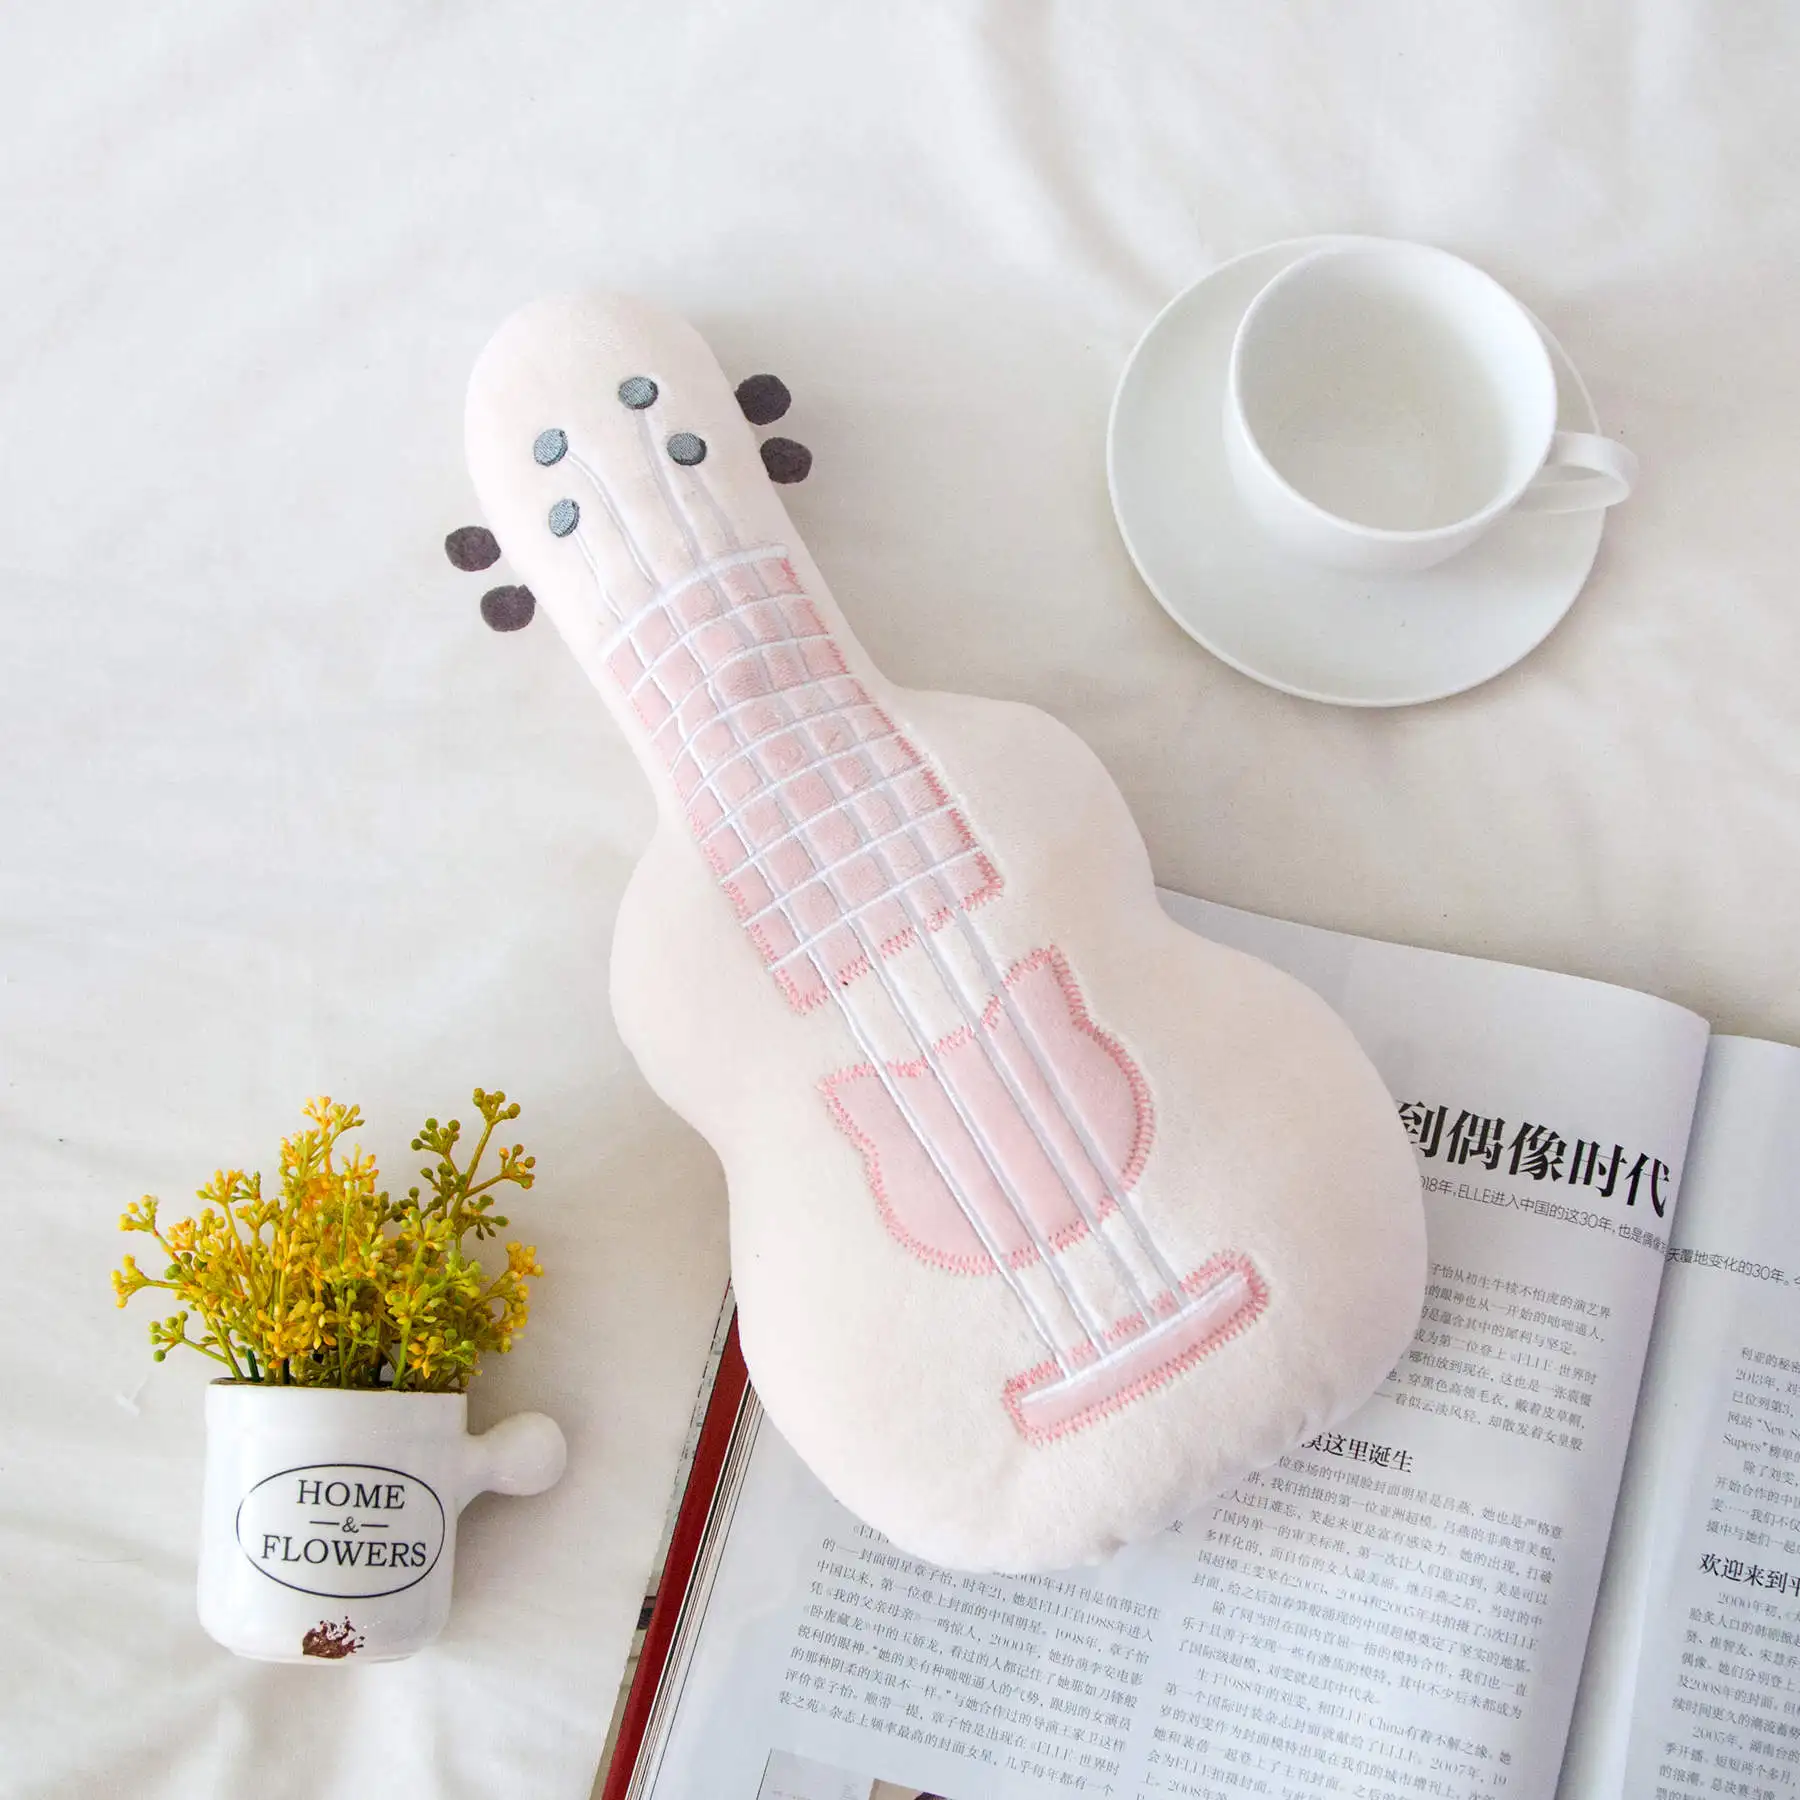 Моделирование 3D гитара плюшевая игрушка мягкая подушка модное милое украшение для дома текстиль постельные принадлежности подушки девушка подарок на день рождения Рождество